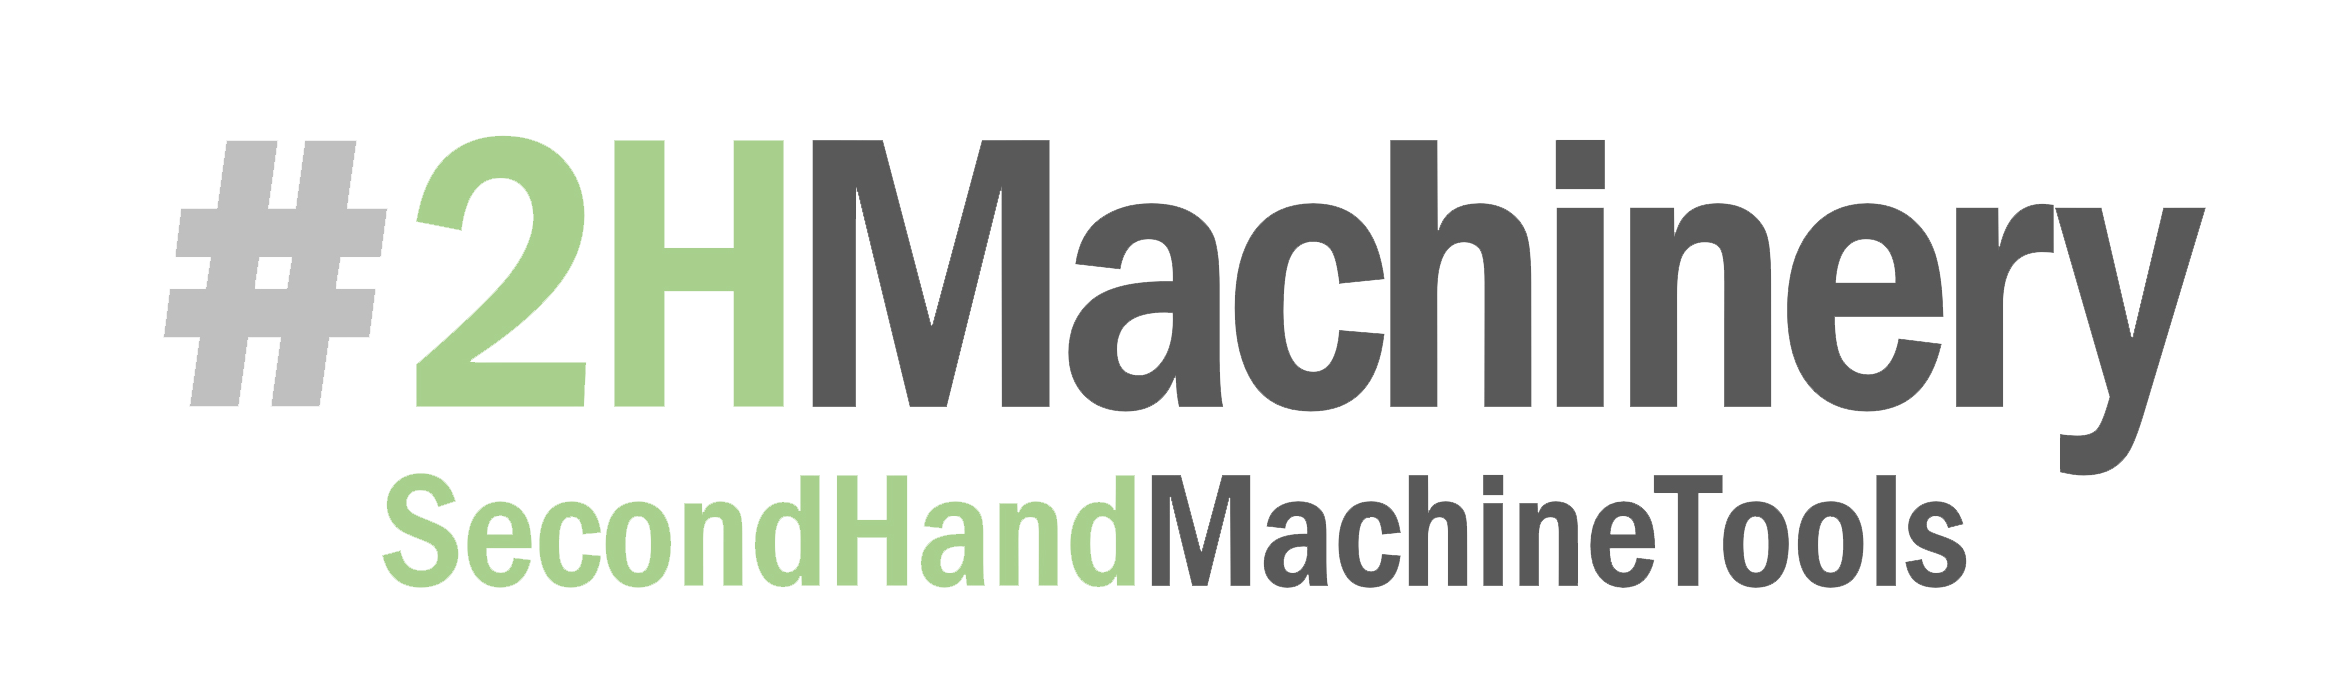 2HMachinery - Vendita macchine utensili usate